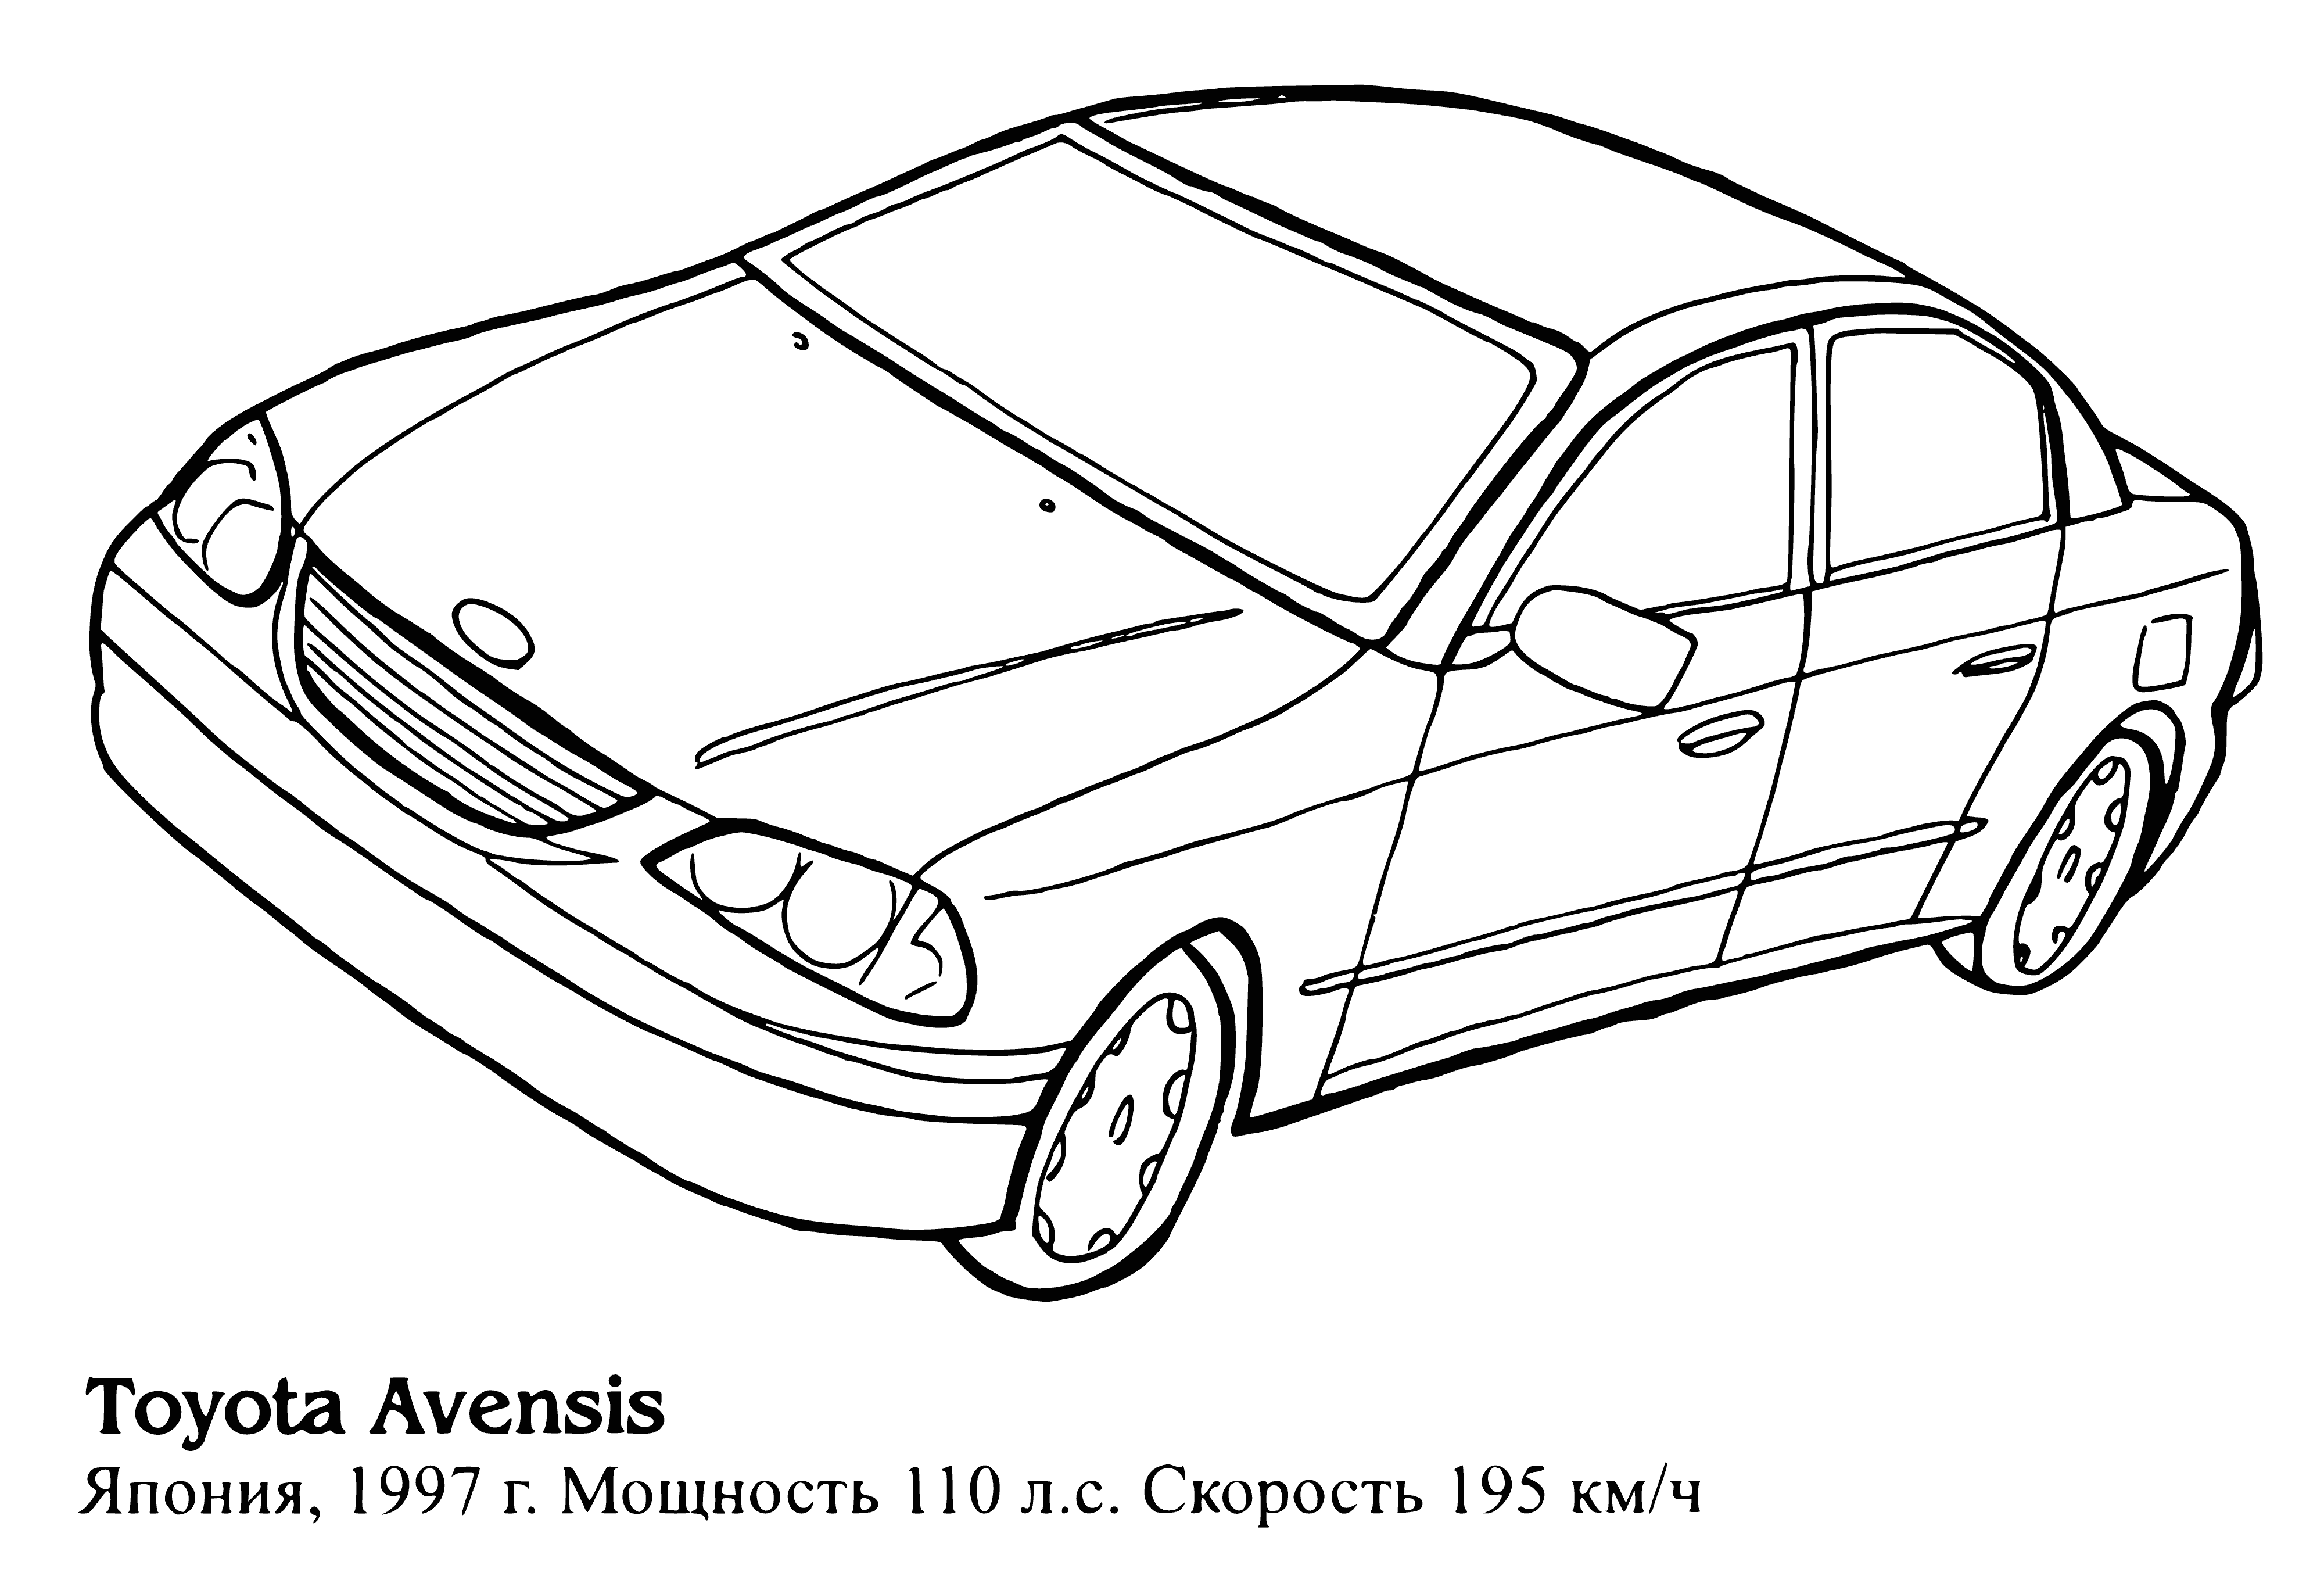 Toyota Avensis boyama sayfası